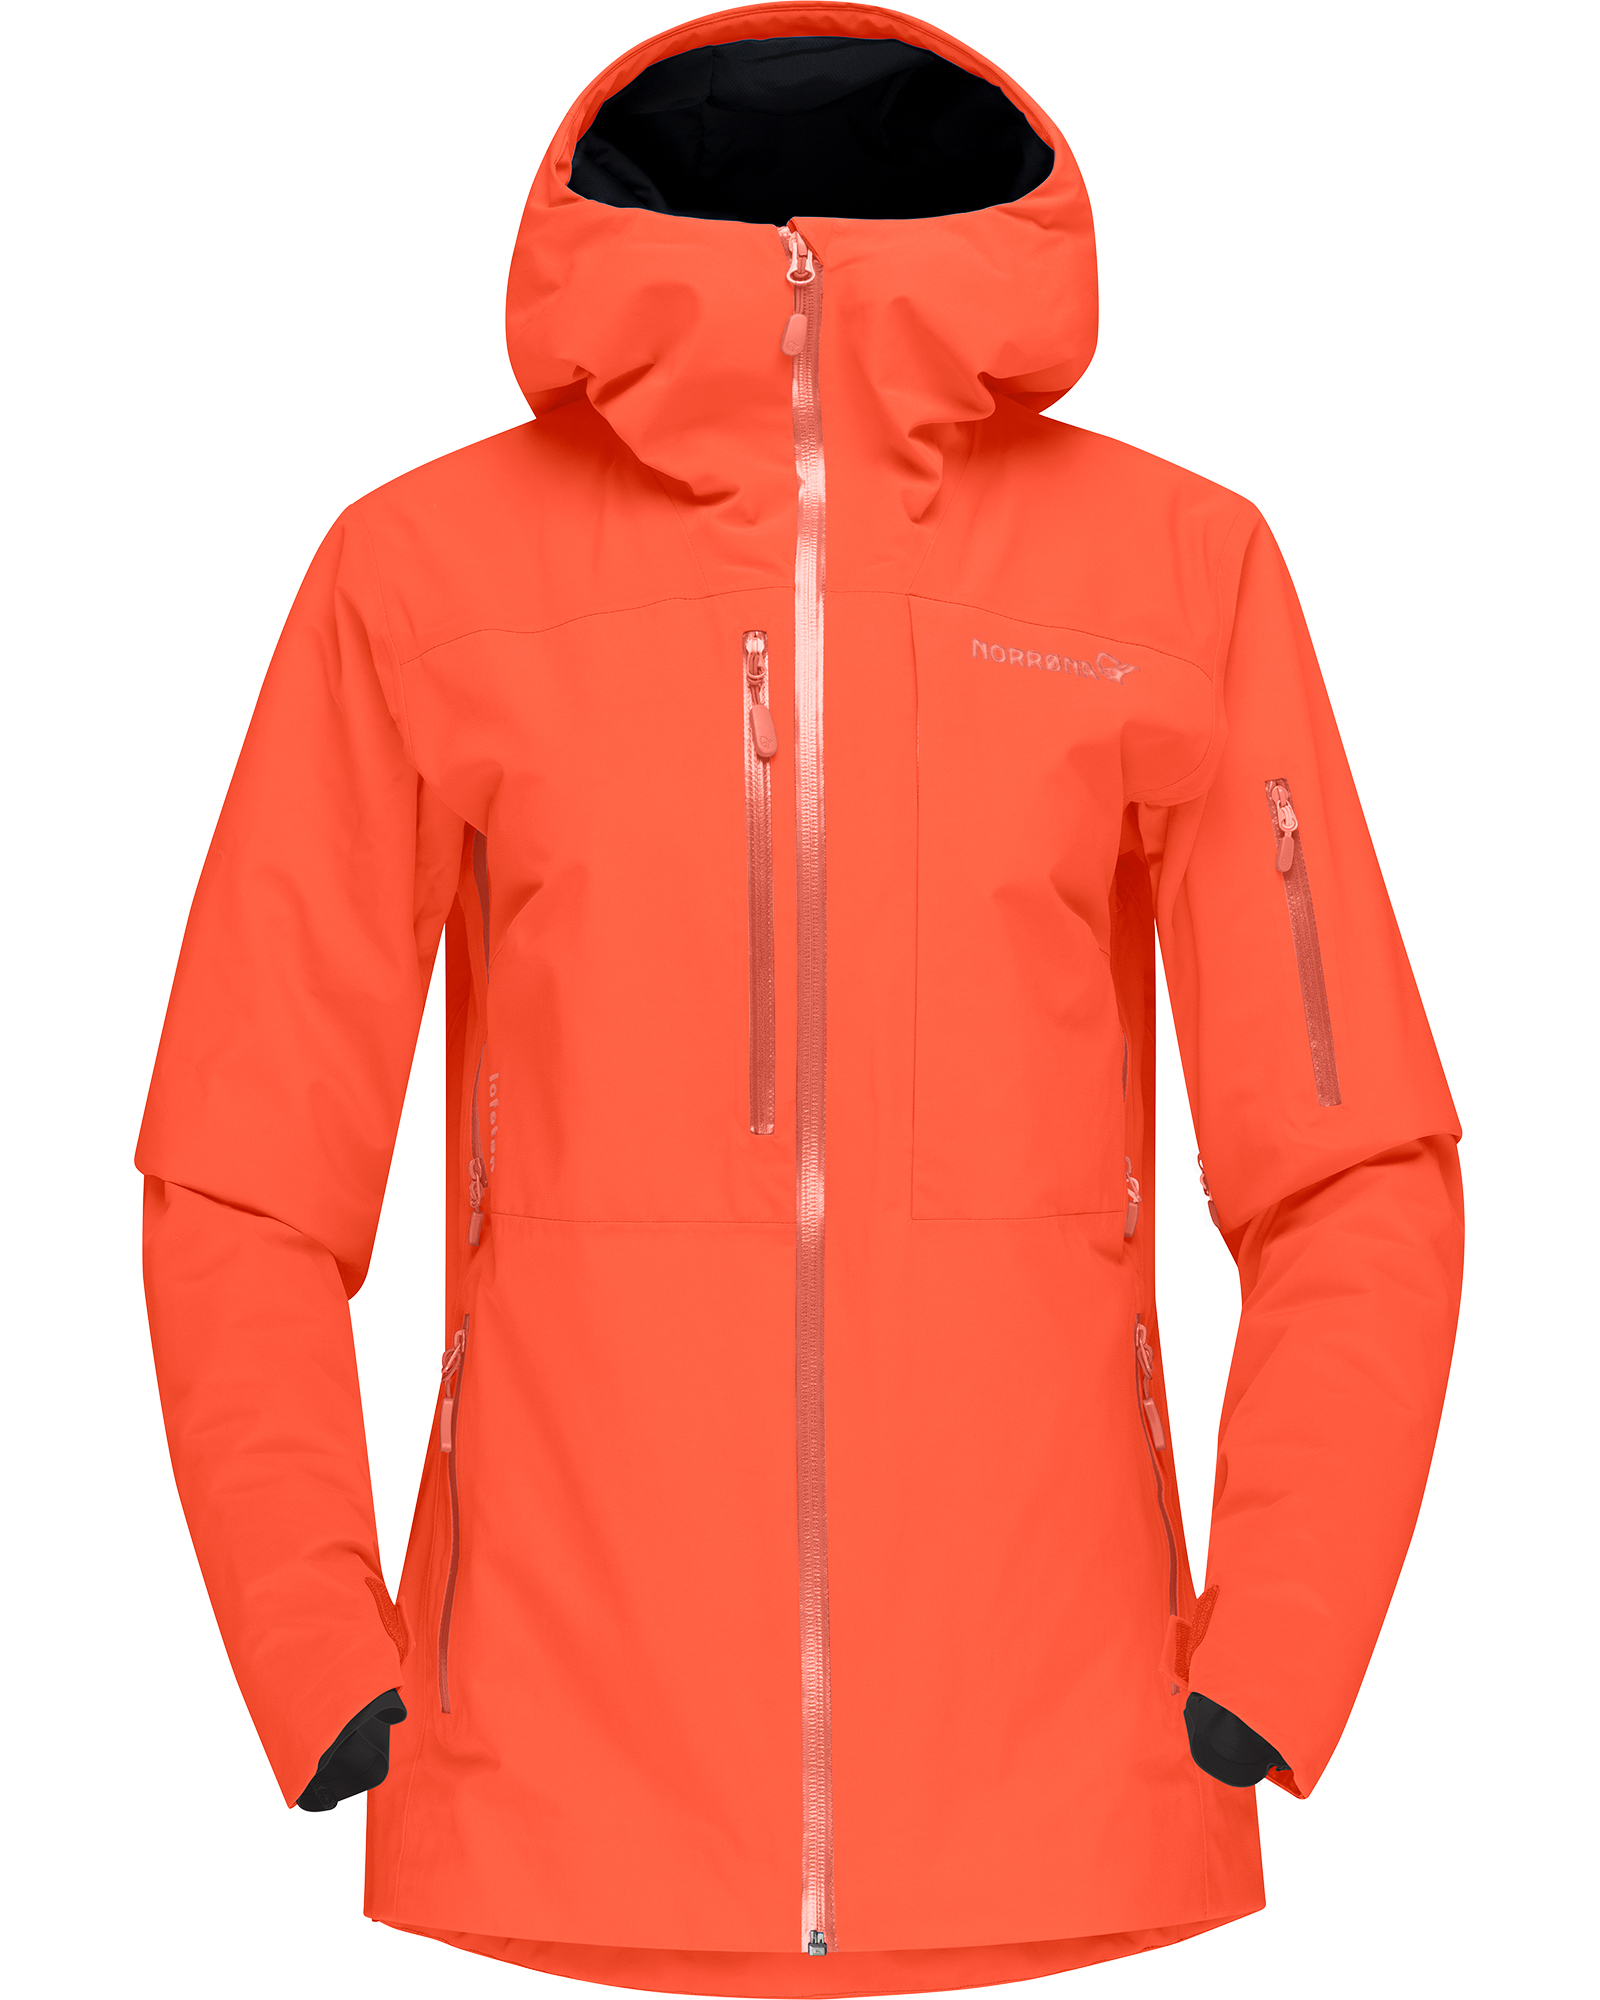 Norrona Lofoten GORE TEX Women’s Insulated Jacket - Orange Alert S